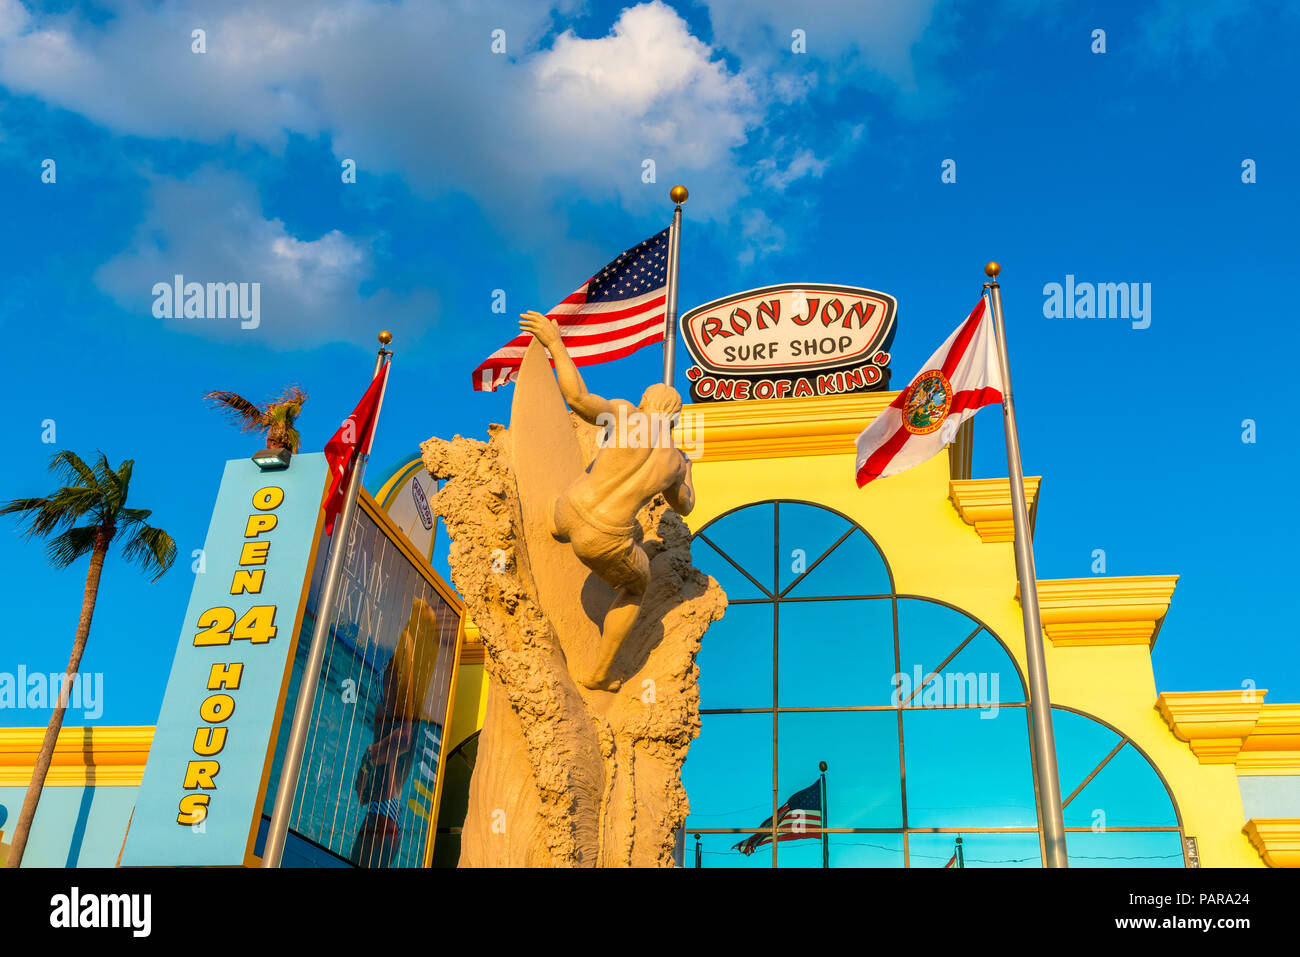 Ron Jon Surf Shop di Cocoa Beach, Florida, Stati Uniti d'America. Ron Jon Surf Shop è un surfer style store catena fondata nel 1959. Foto Stock